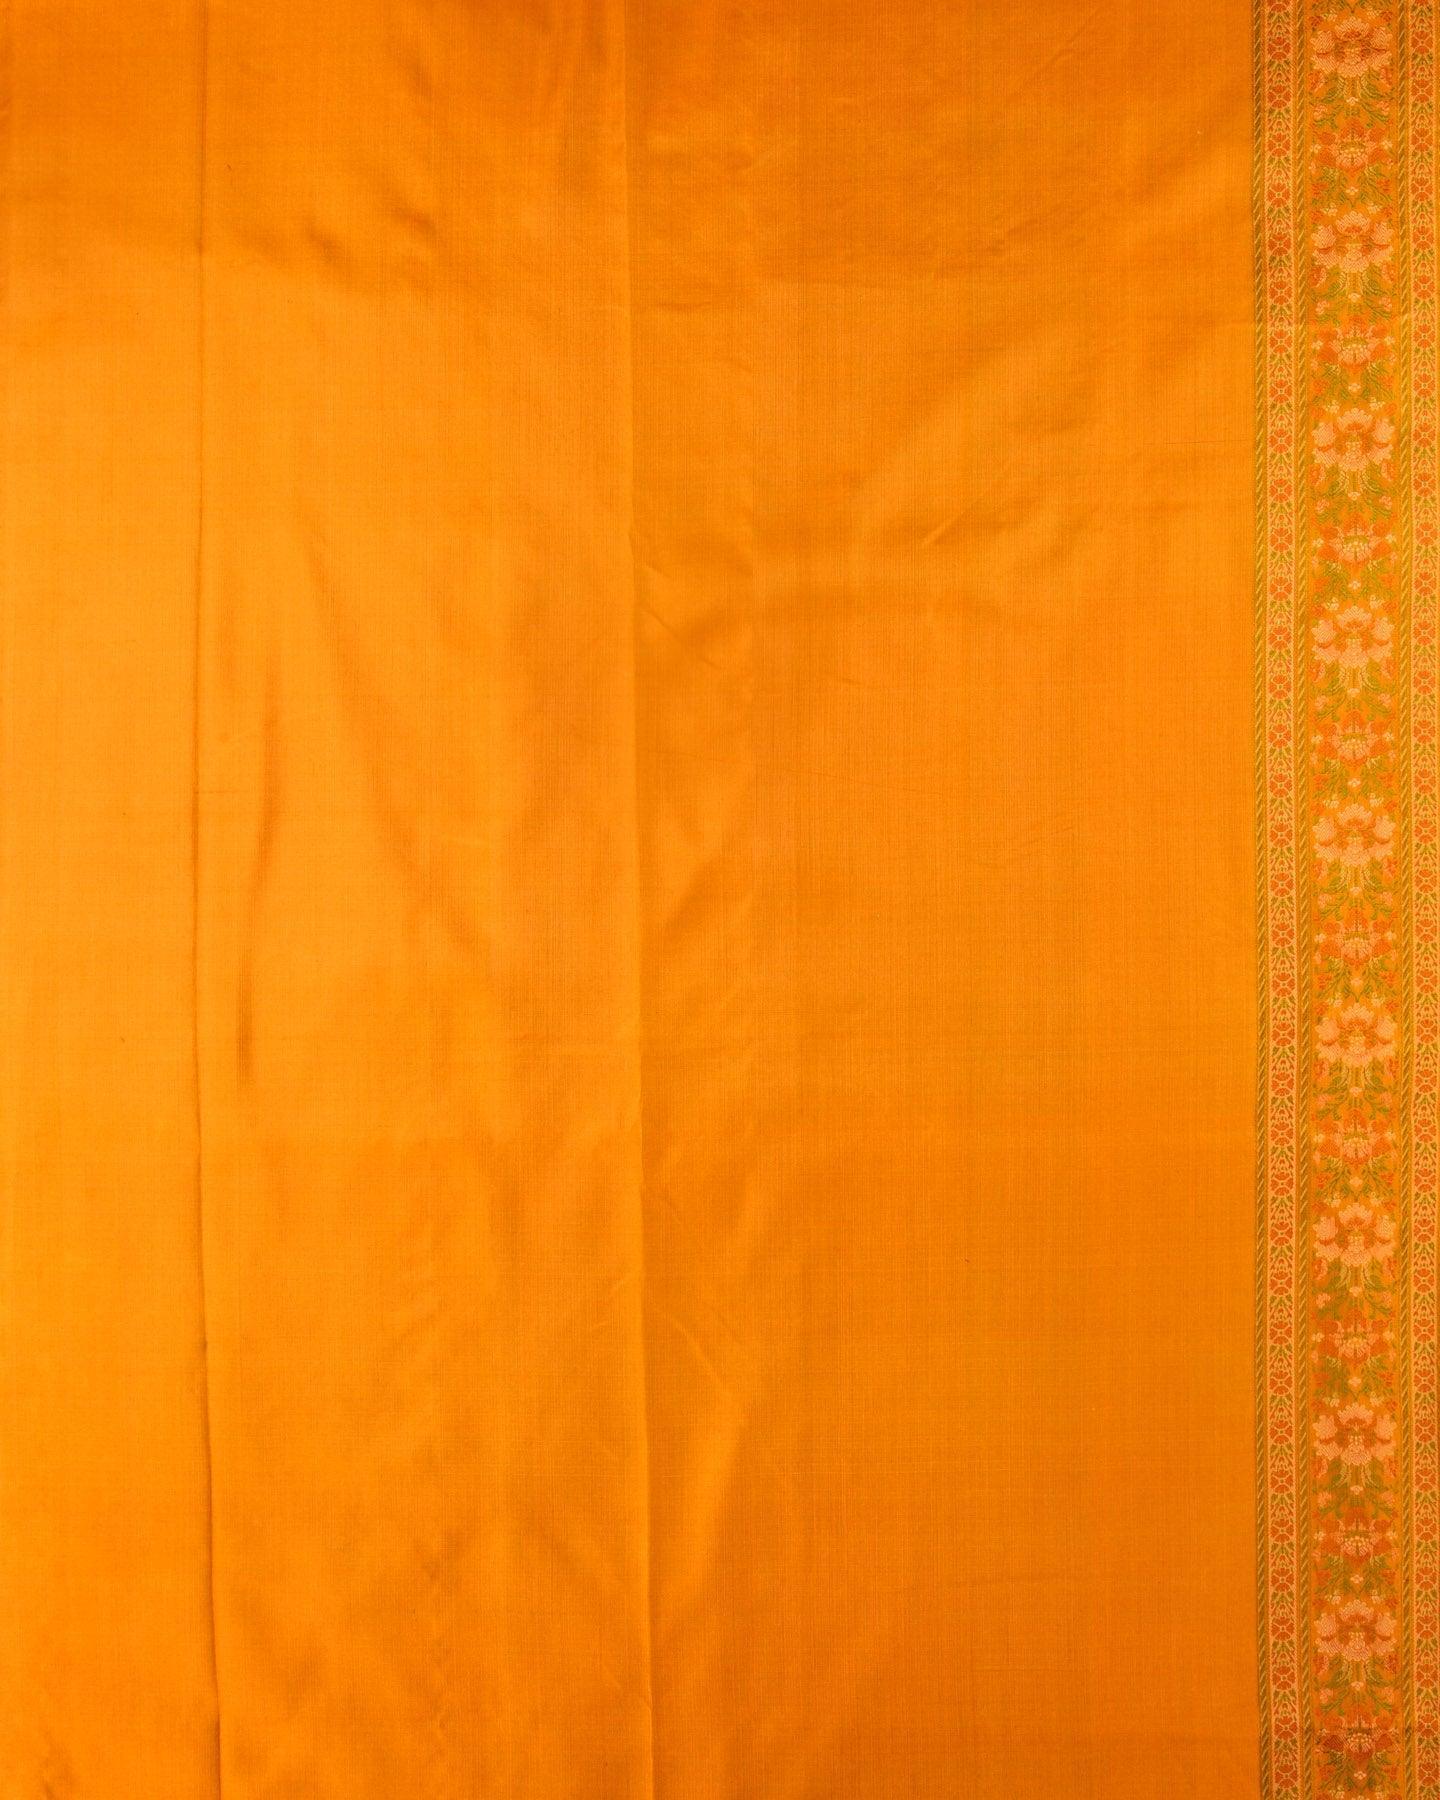 Mustard Yellow Banarasi Floral Jaal Tehri Jamawar Handwoven Katan Silk Saree with Contrast Border Pallu - By HolyWeaves, Benares